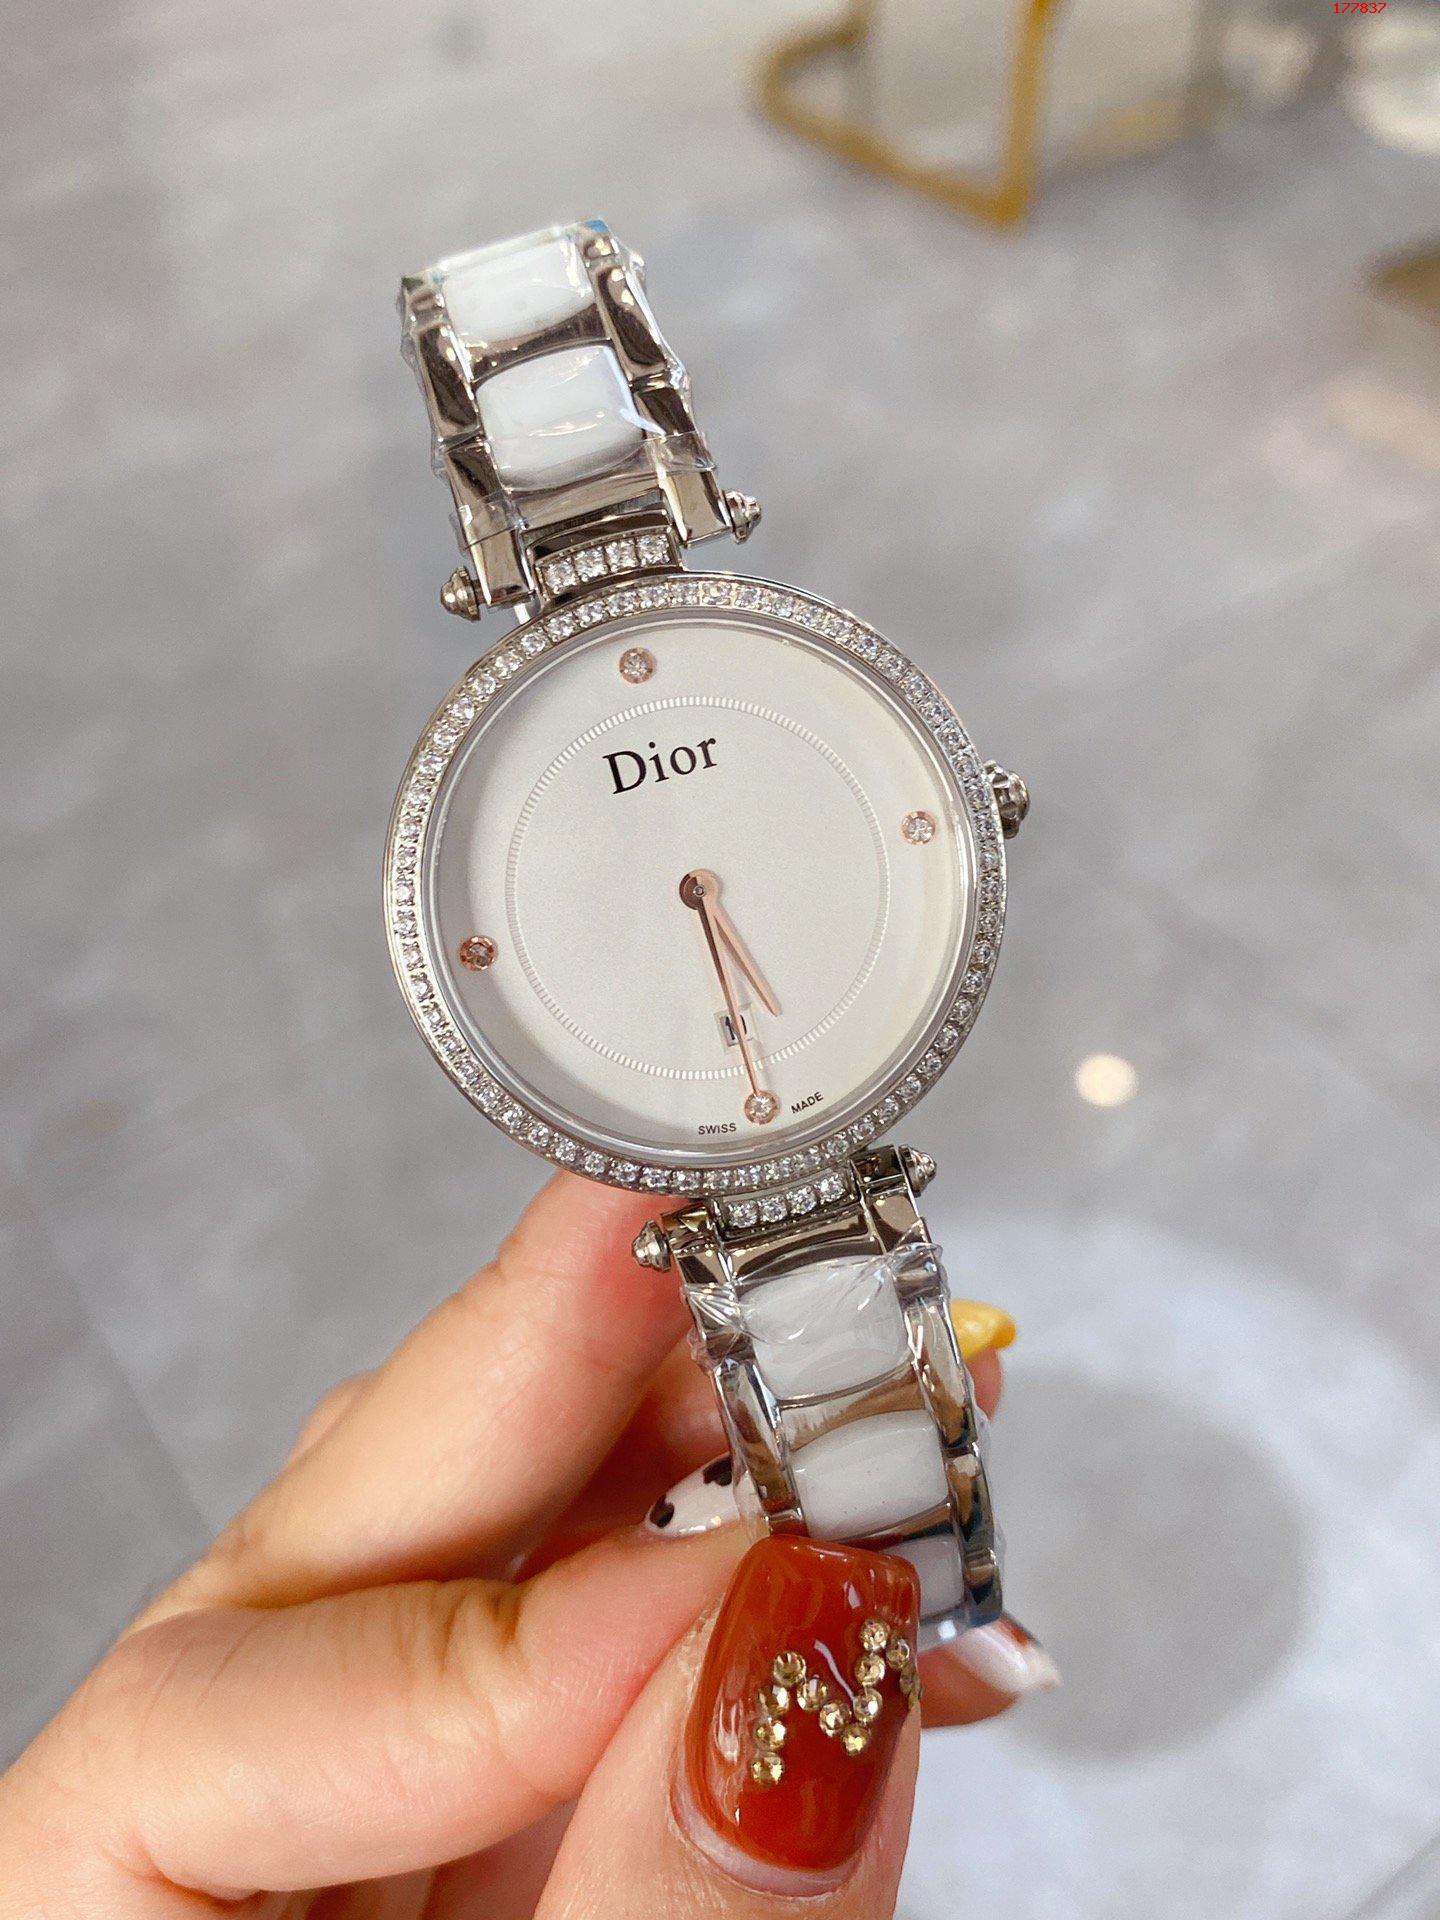 原单迪奥手表|高仿迪奥手表|精仿迪奥手表|一比一迪奥手表迪奥-Dior 全新高级珠宝系列女士腕表 展现精湛艺术品质 融汇优雅与美感 处处显露精致和高雅的一款 进口石英机芯 传统工匠手工打造 独特的网格表盘设计 搭配12颗时位点缀钻更显示出它的独特魅力之处 加强了整个手表的结构感优雅时尚 沿袭了迪奥珠宝表现出女性特质 作为奢侈品品牌中最早推出便引领了时尚新潮流 重新诠释新一代女性的优雅品味 展现精湛艺术品质 融汇优雅与美感 处处显露精致和高雅 与珠宝交相辉映 流光溢彩 尺寸33 7